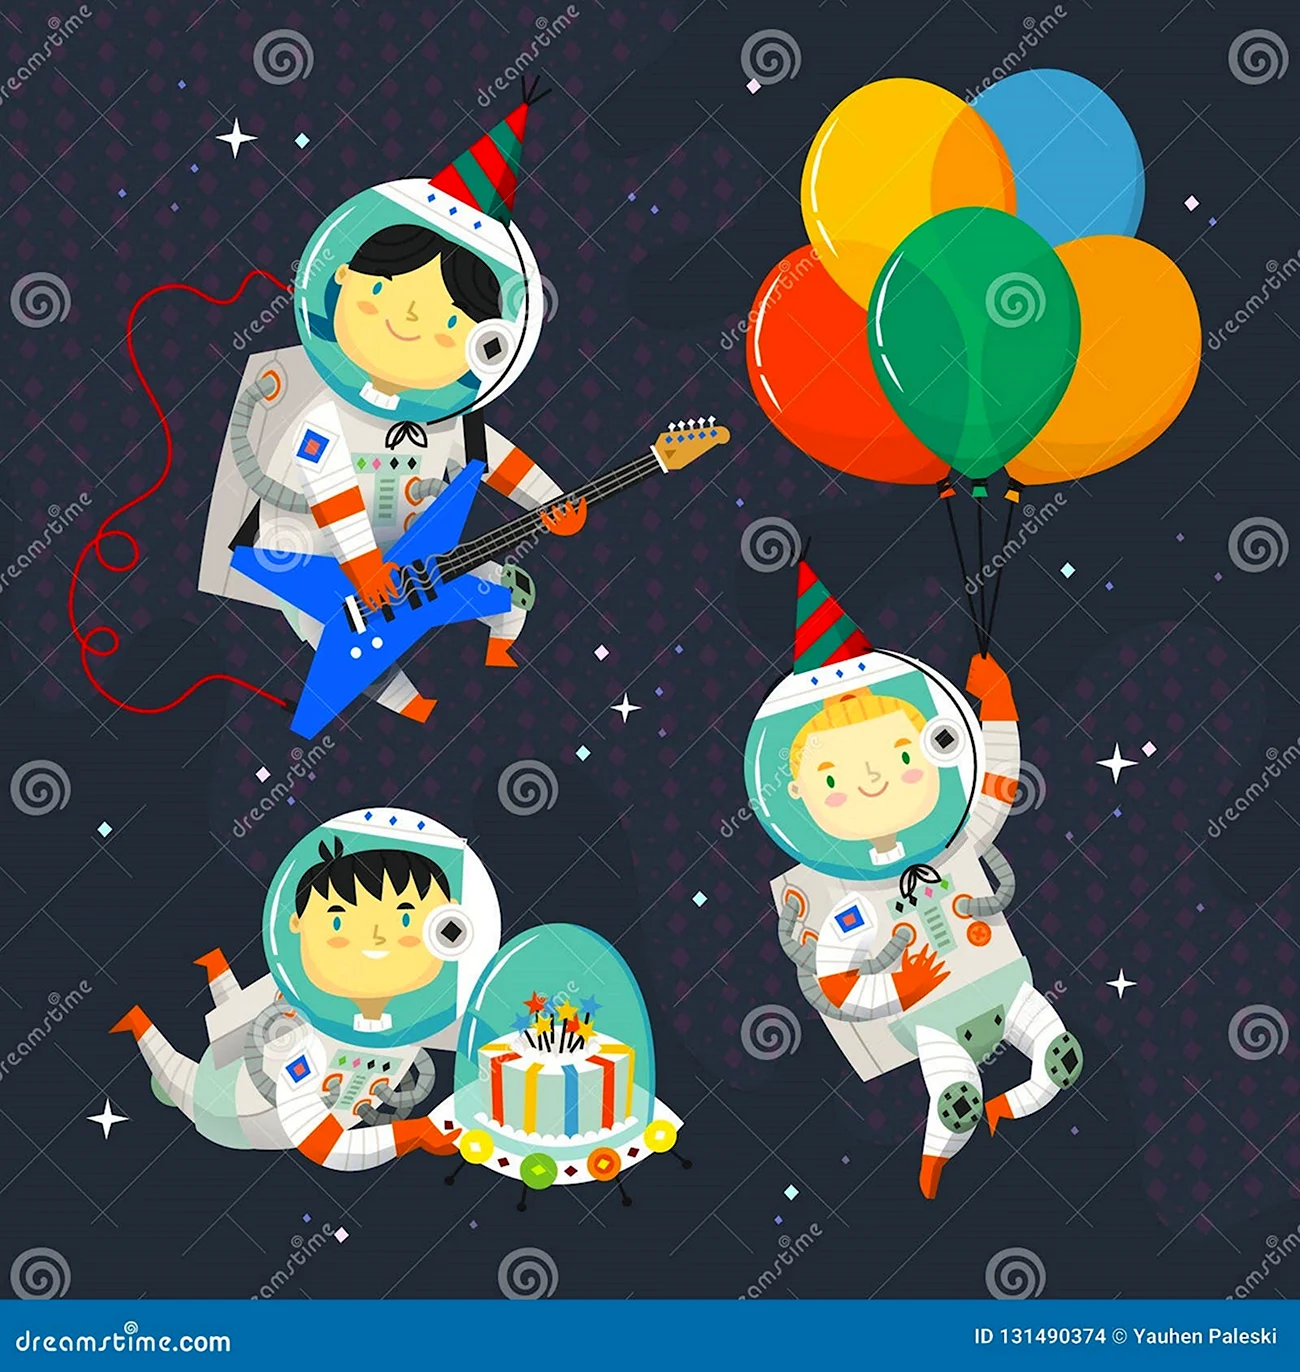 С днем рождения космонавт. Красивая картинка